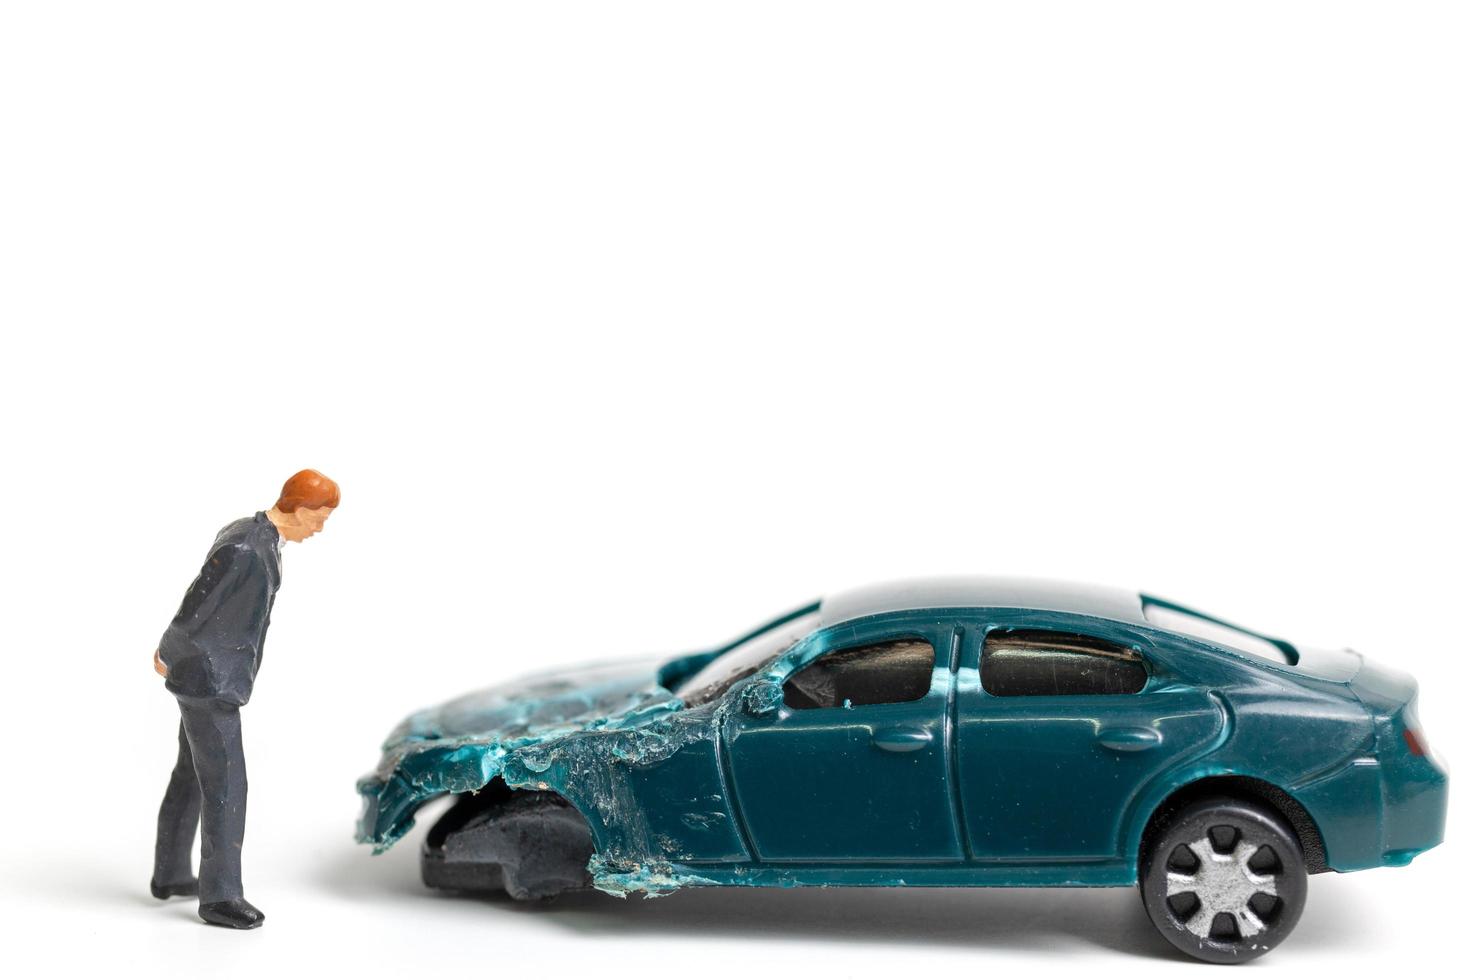 Personne miniature sur les lieux d'un accident de voiture, accident de voiture sur fond blanc, conduire en toute sécurité concept photo